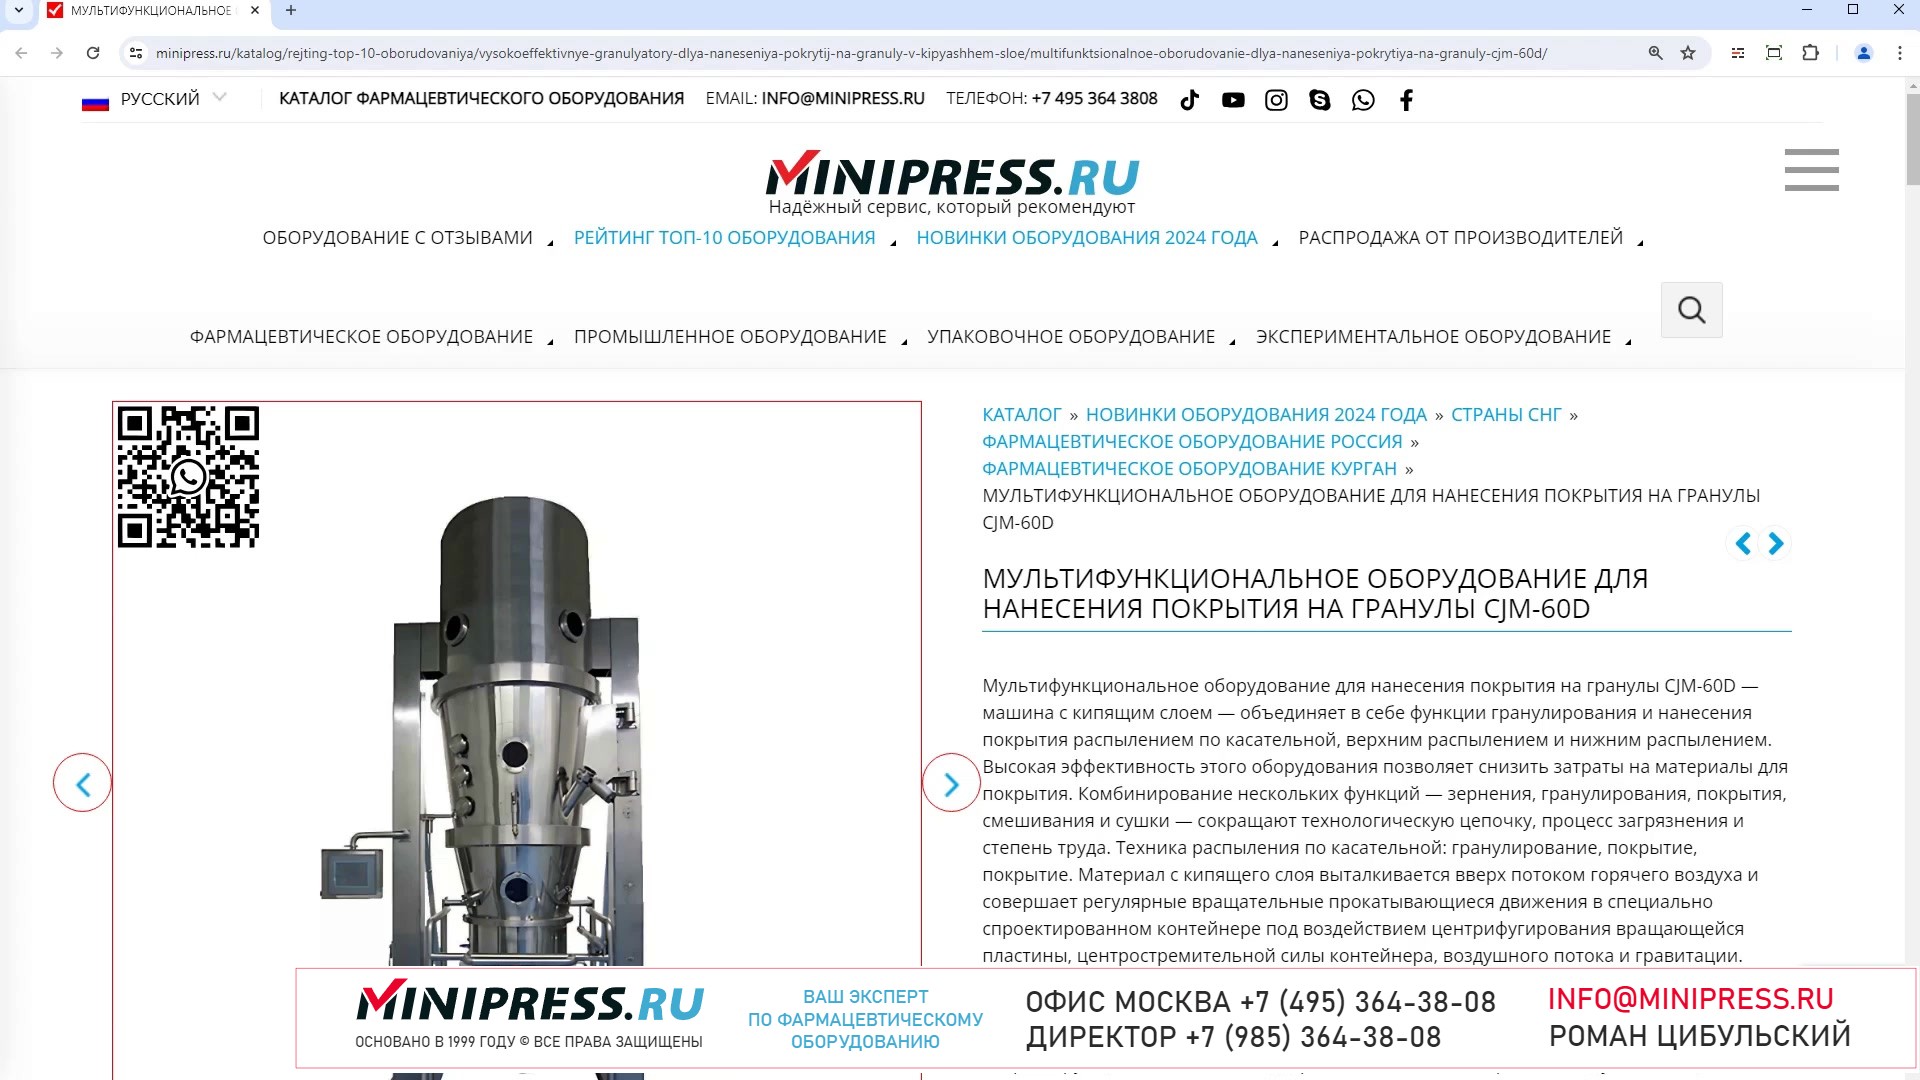 Minipress.ru Мультифункциональное оборудование для нанесения покрытия на гранулы CJM-60D